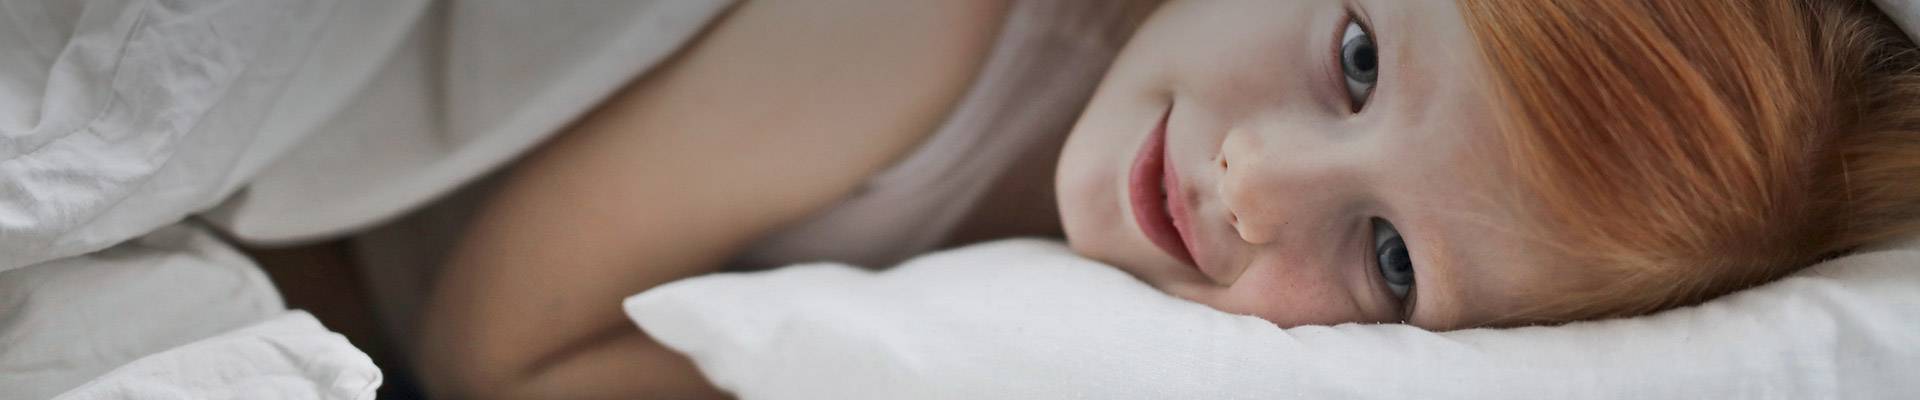 tips voor een rustige bedtijd - geen slapeloze nachten